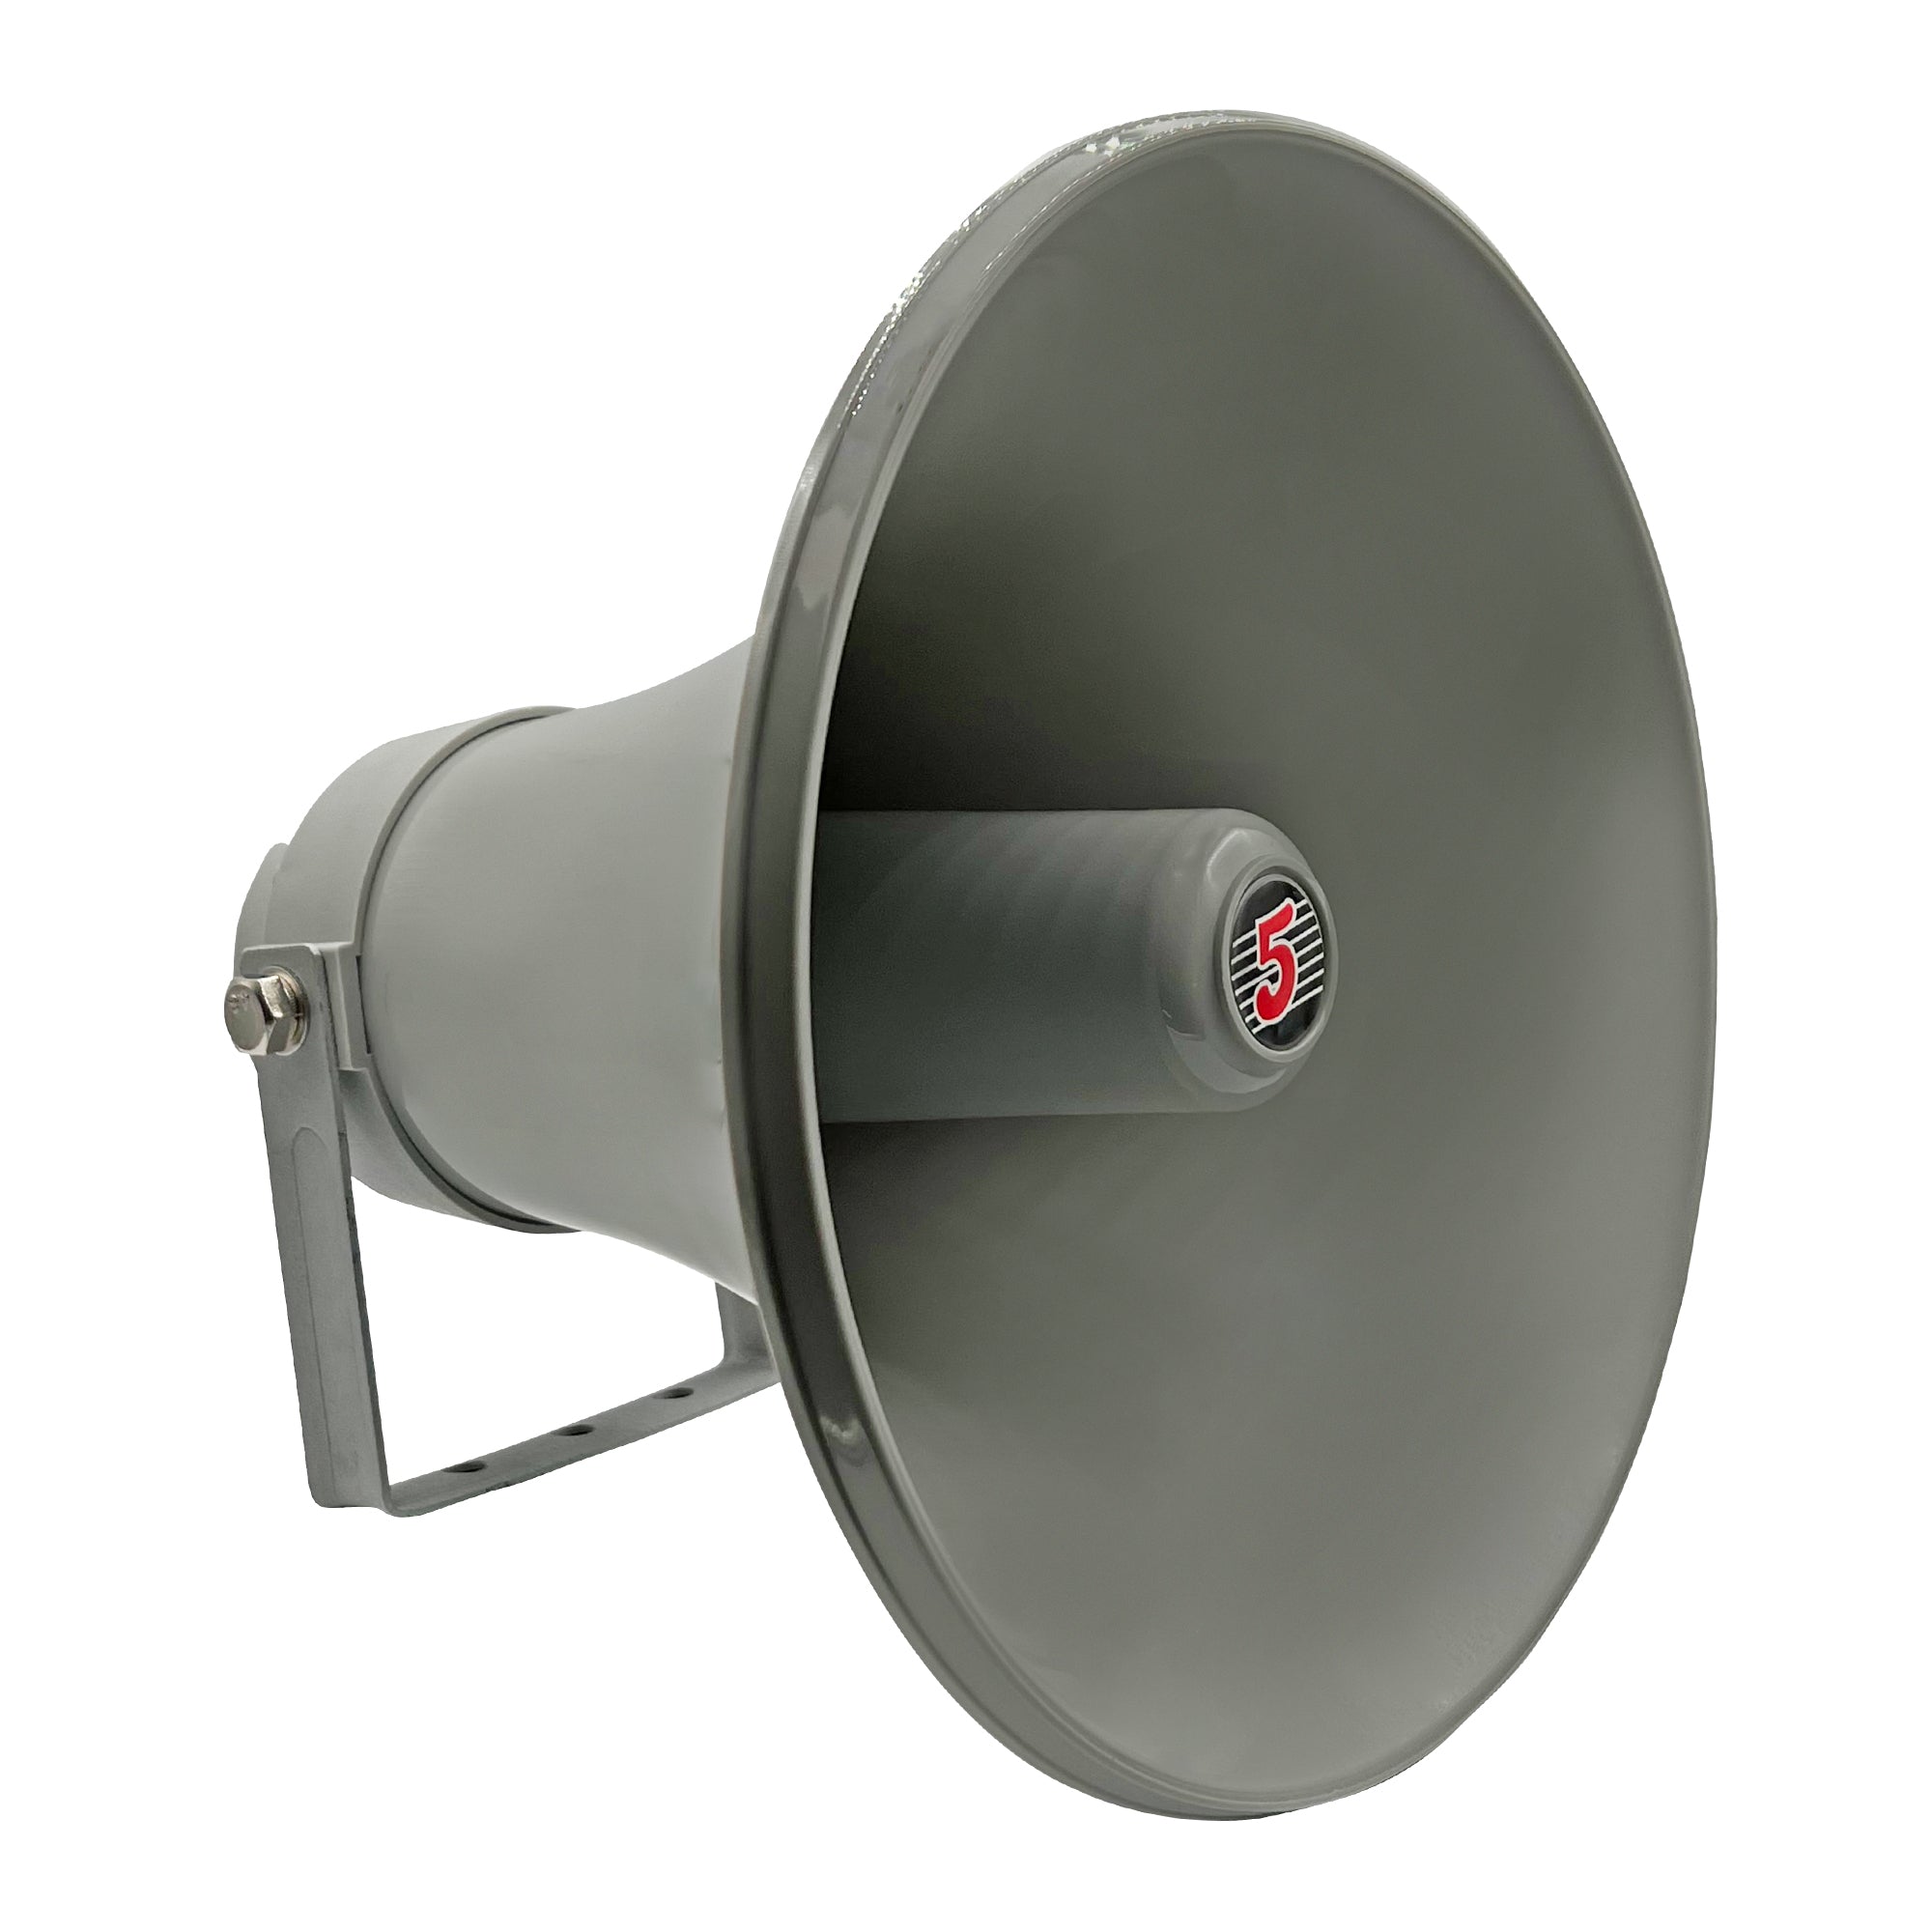 5 CORE Indoor Outdoor PA Horn Circular Speaker 12 Inch 350W PMPO Loud Sound Driver Horns Weatherproof